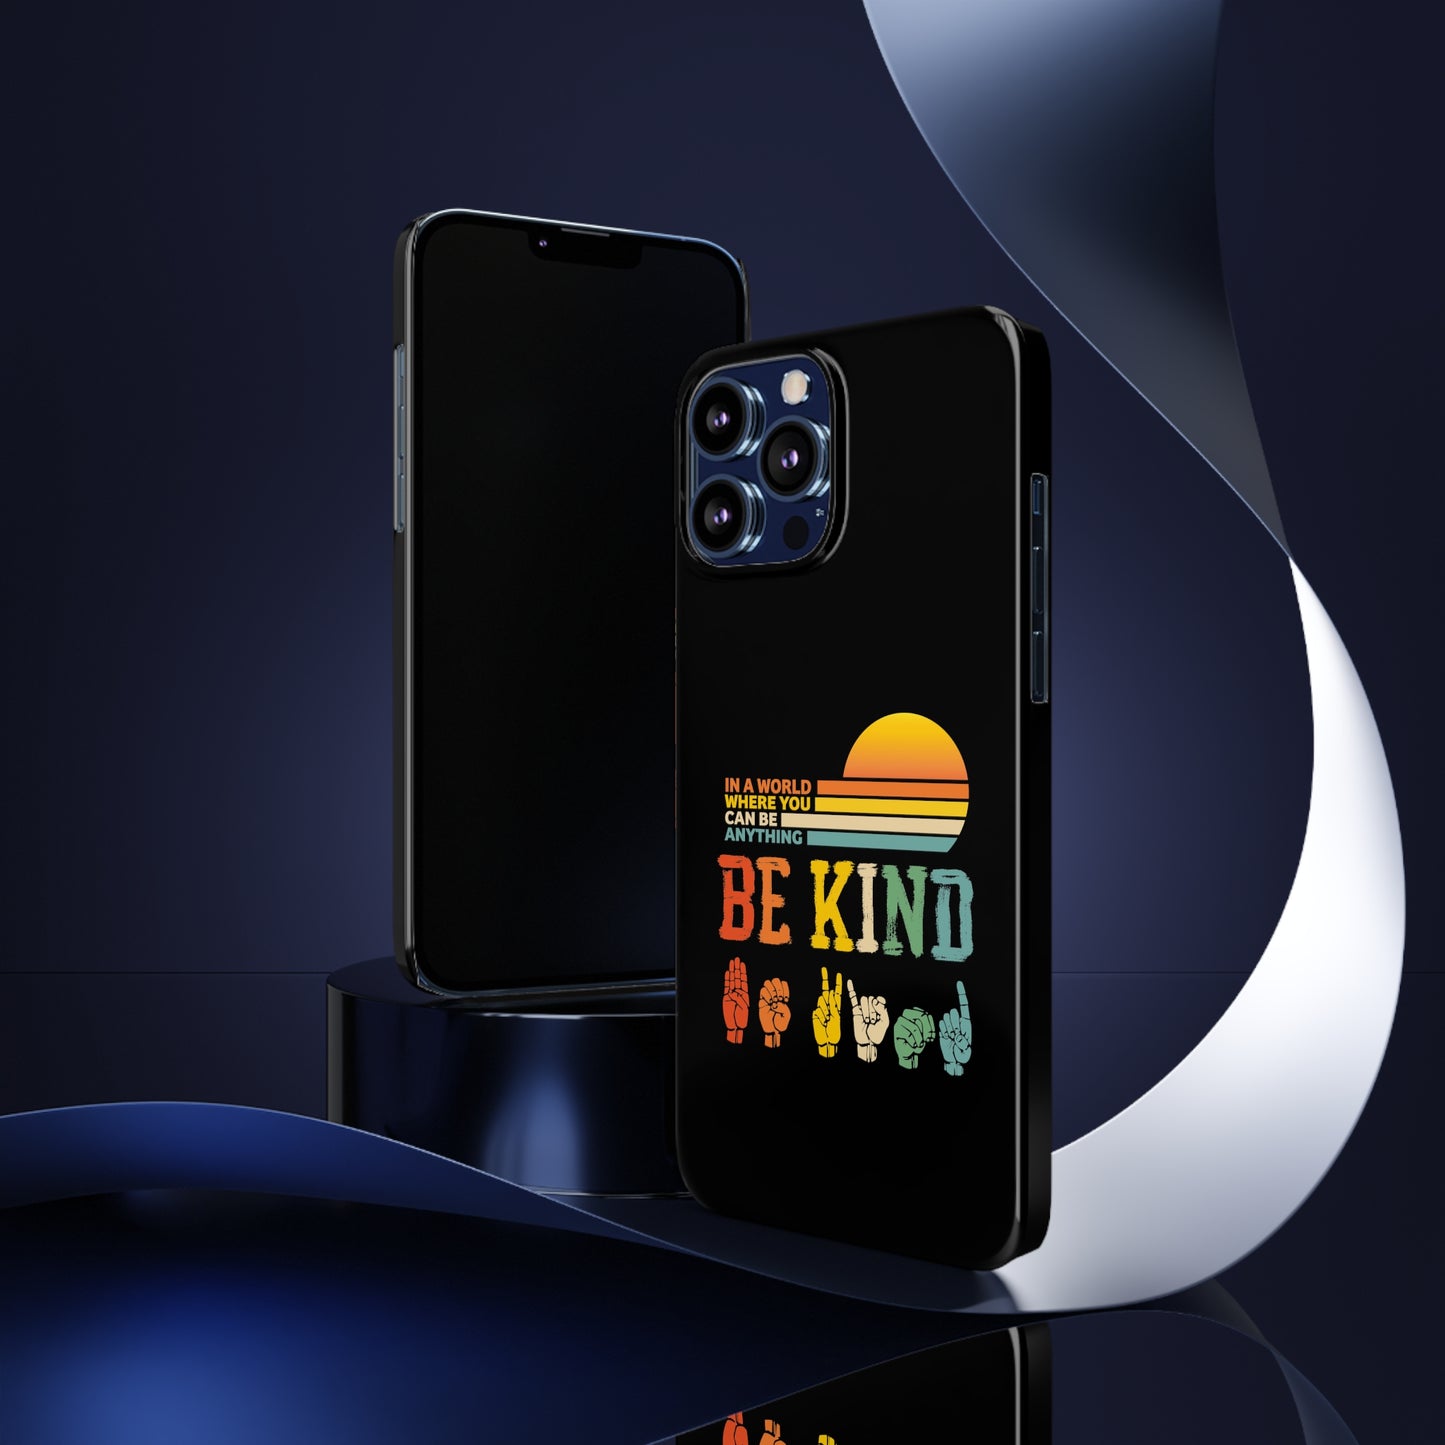 Be Kind Slim Phone Case - Black